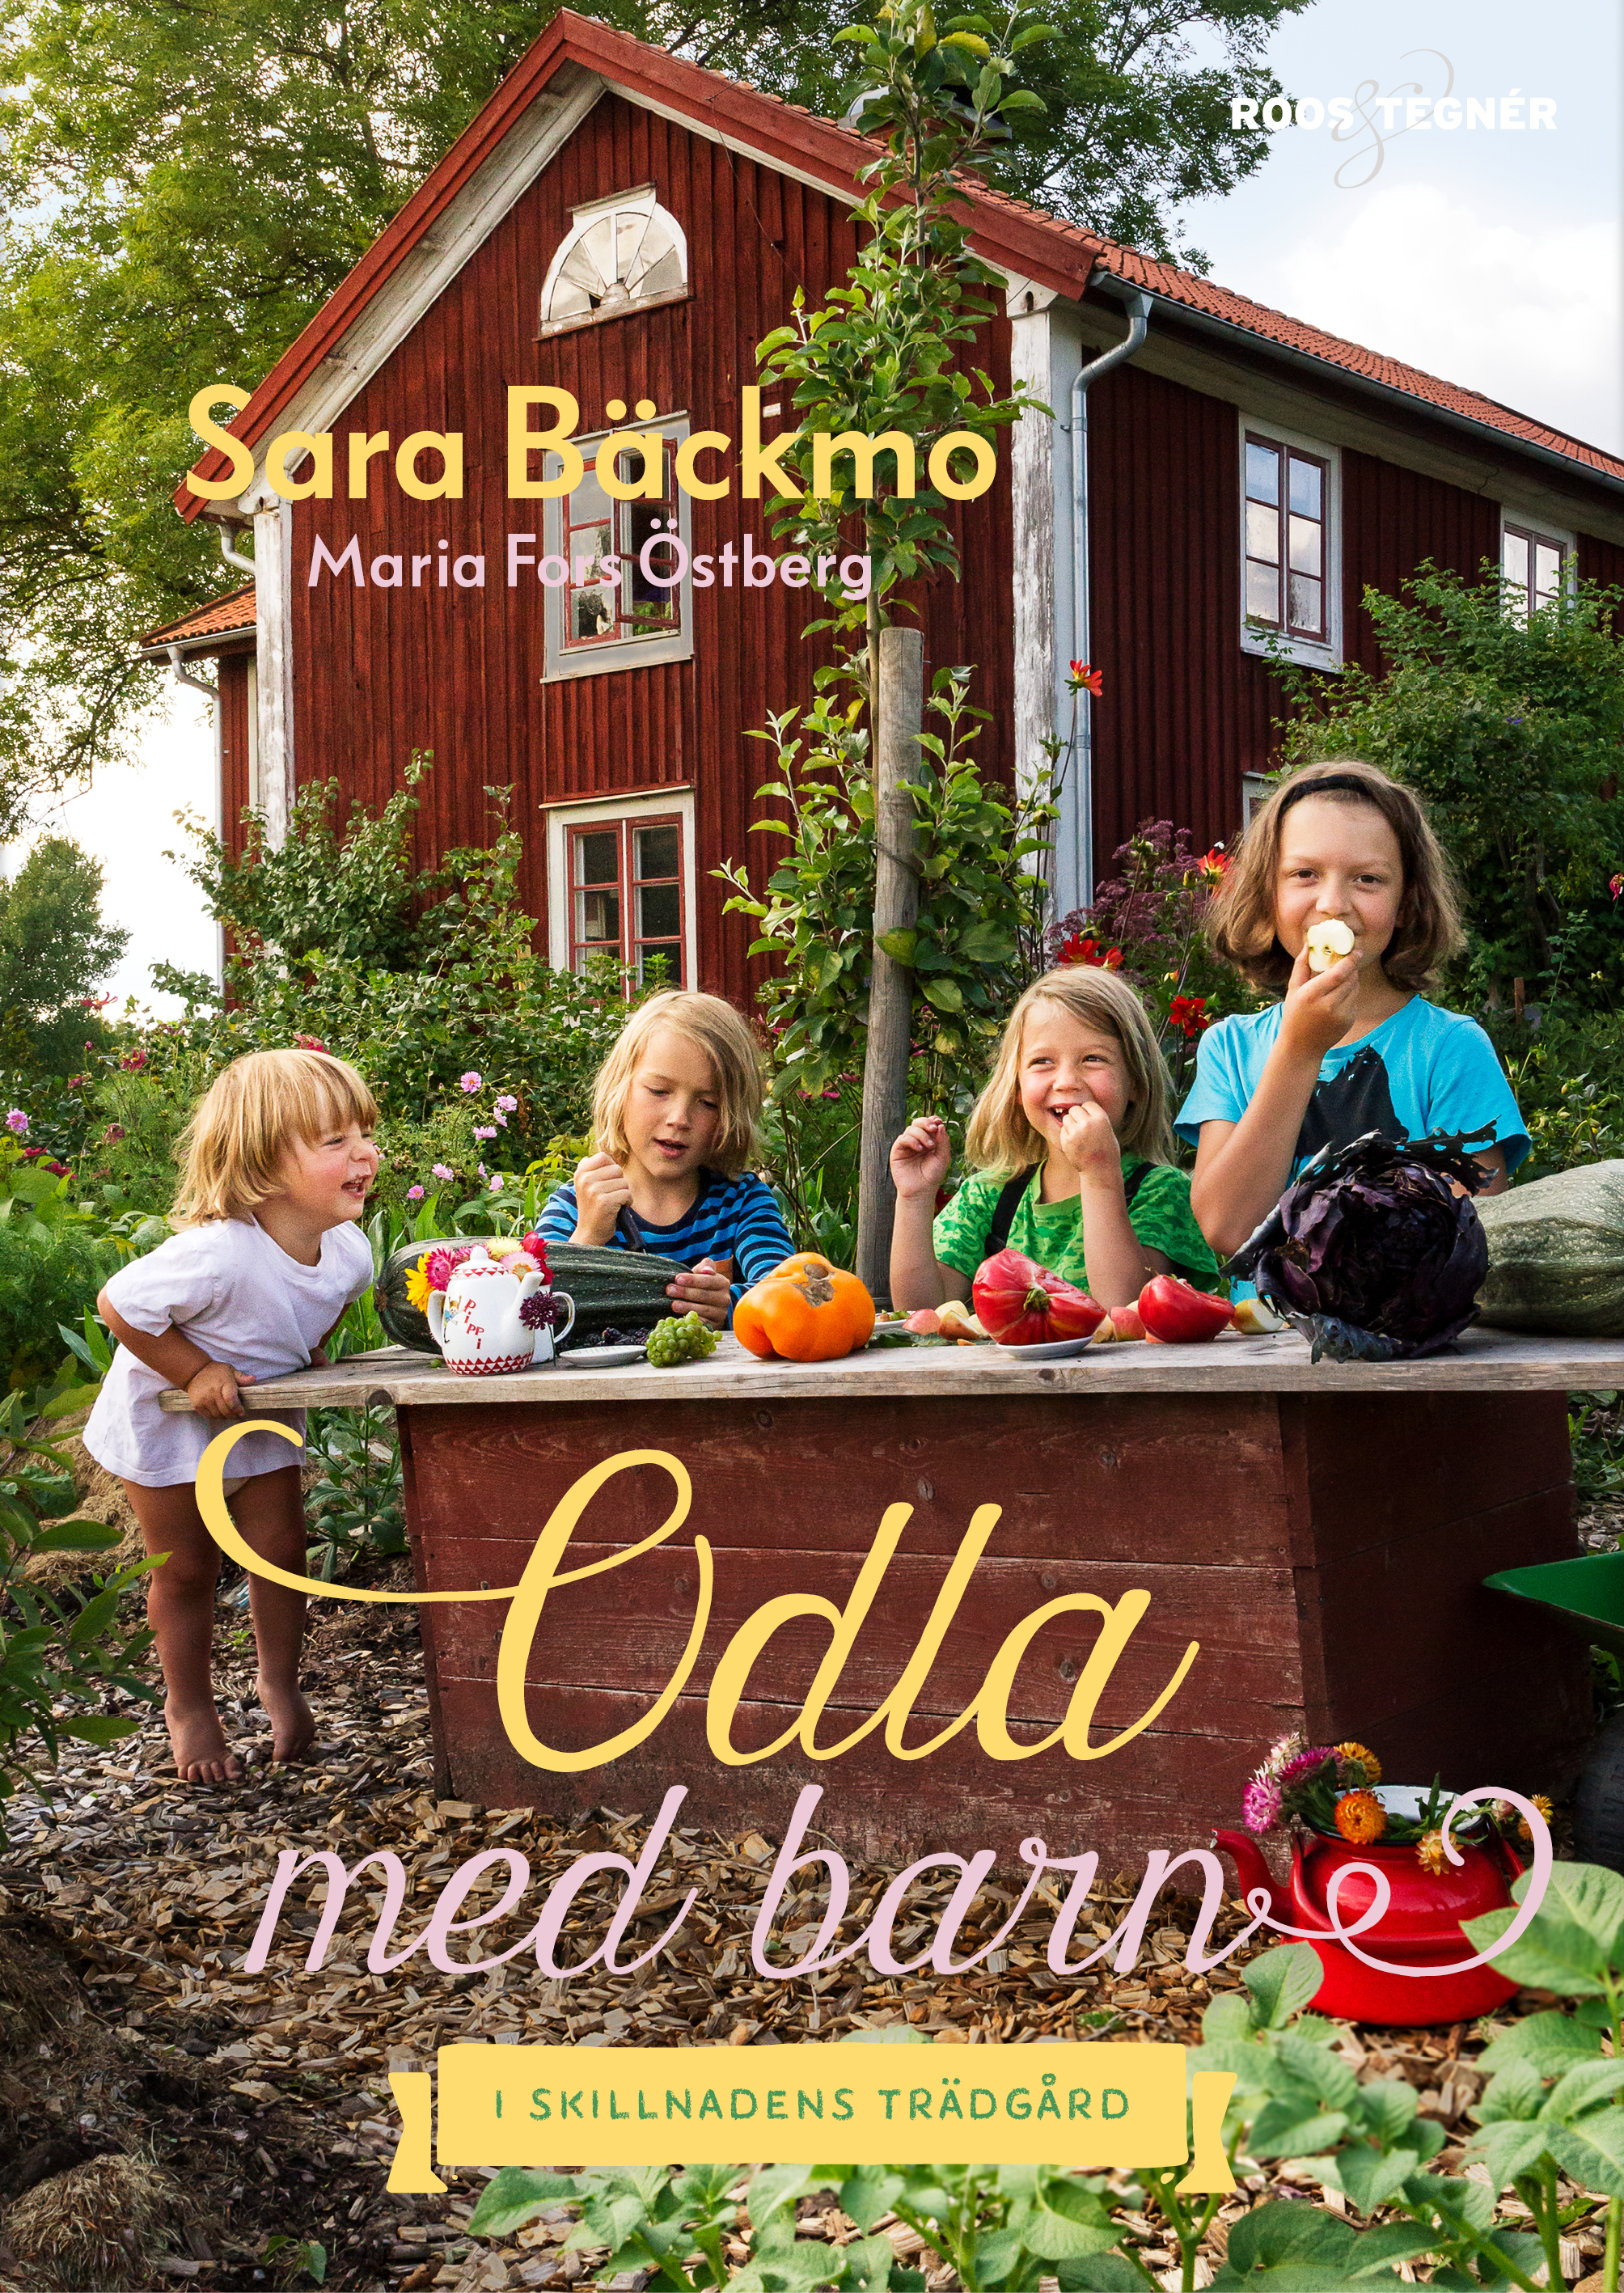 Bokomslag med fyra glada barn i trädgården som leker affär. Growing with kids, four happy children on the cover.